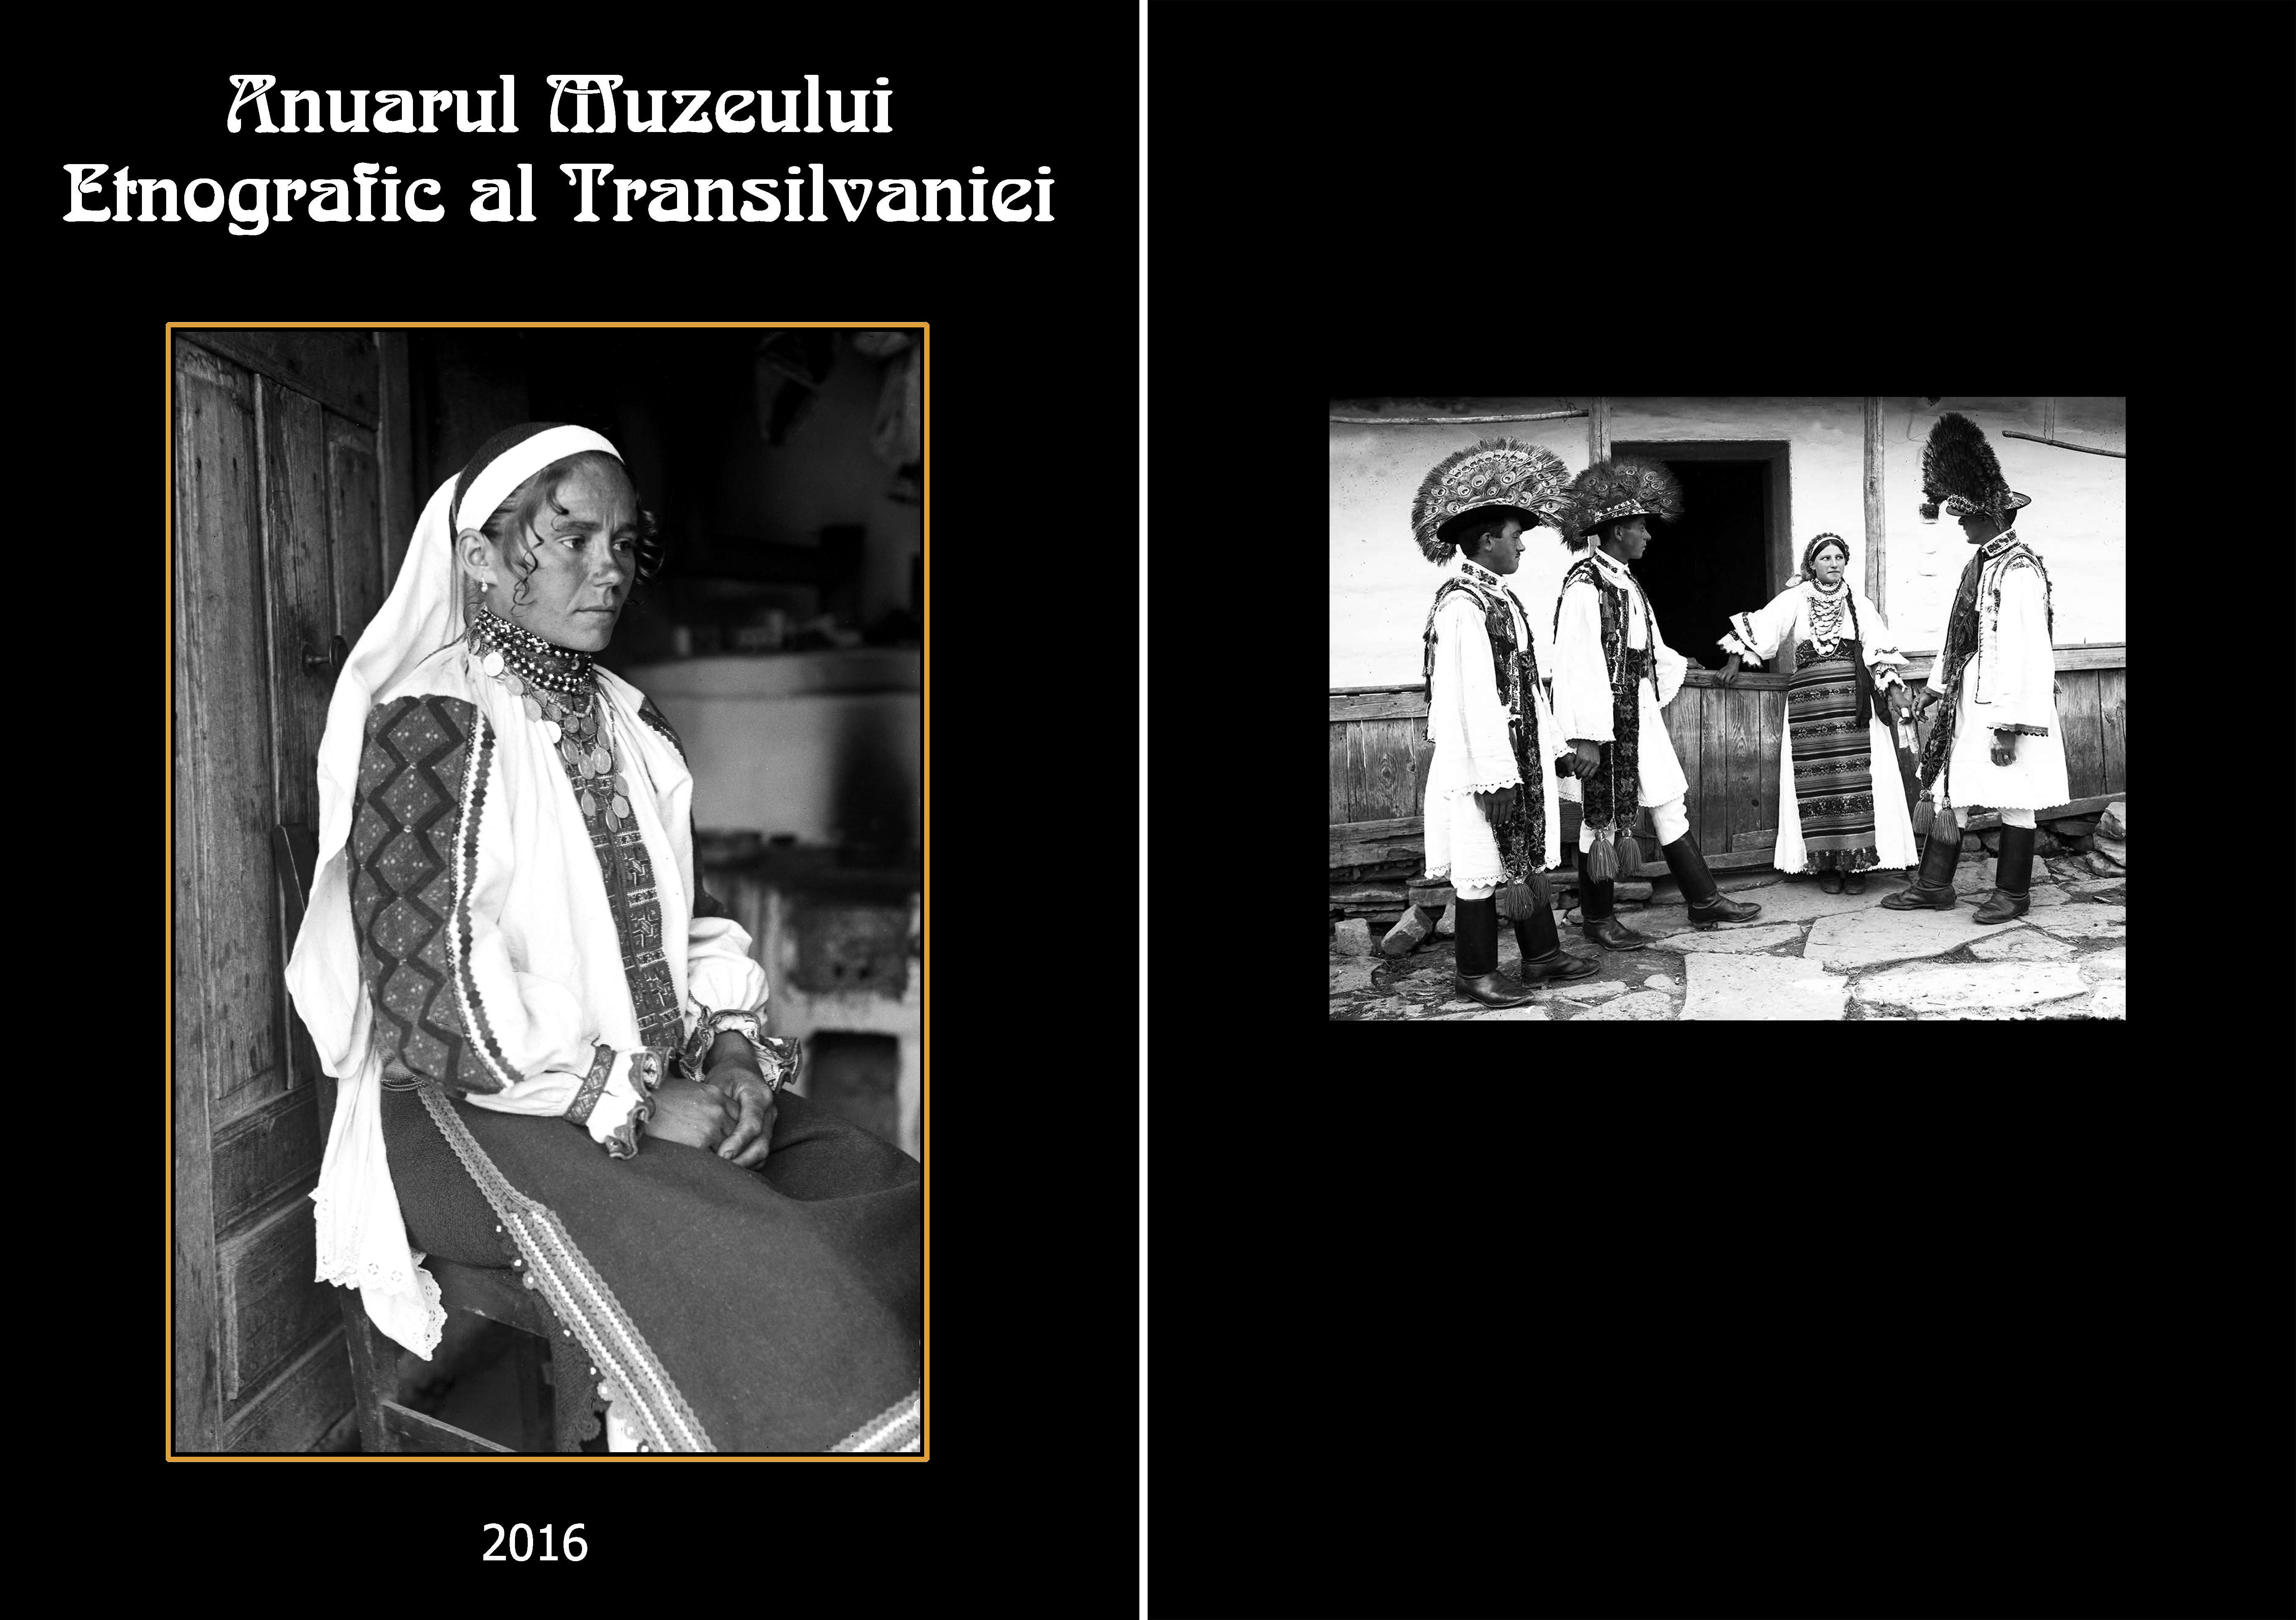 Obiceiurile funebre din Moldova în context național Cover Image